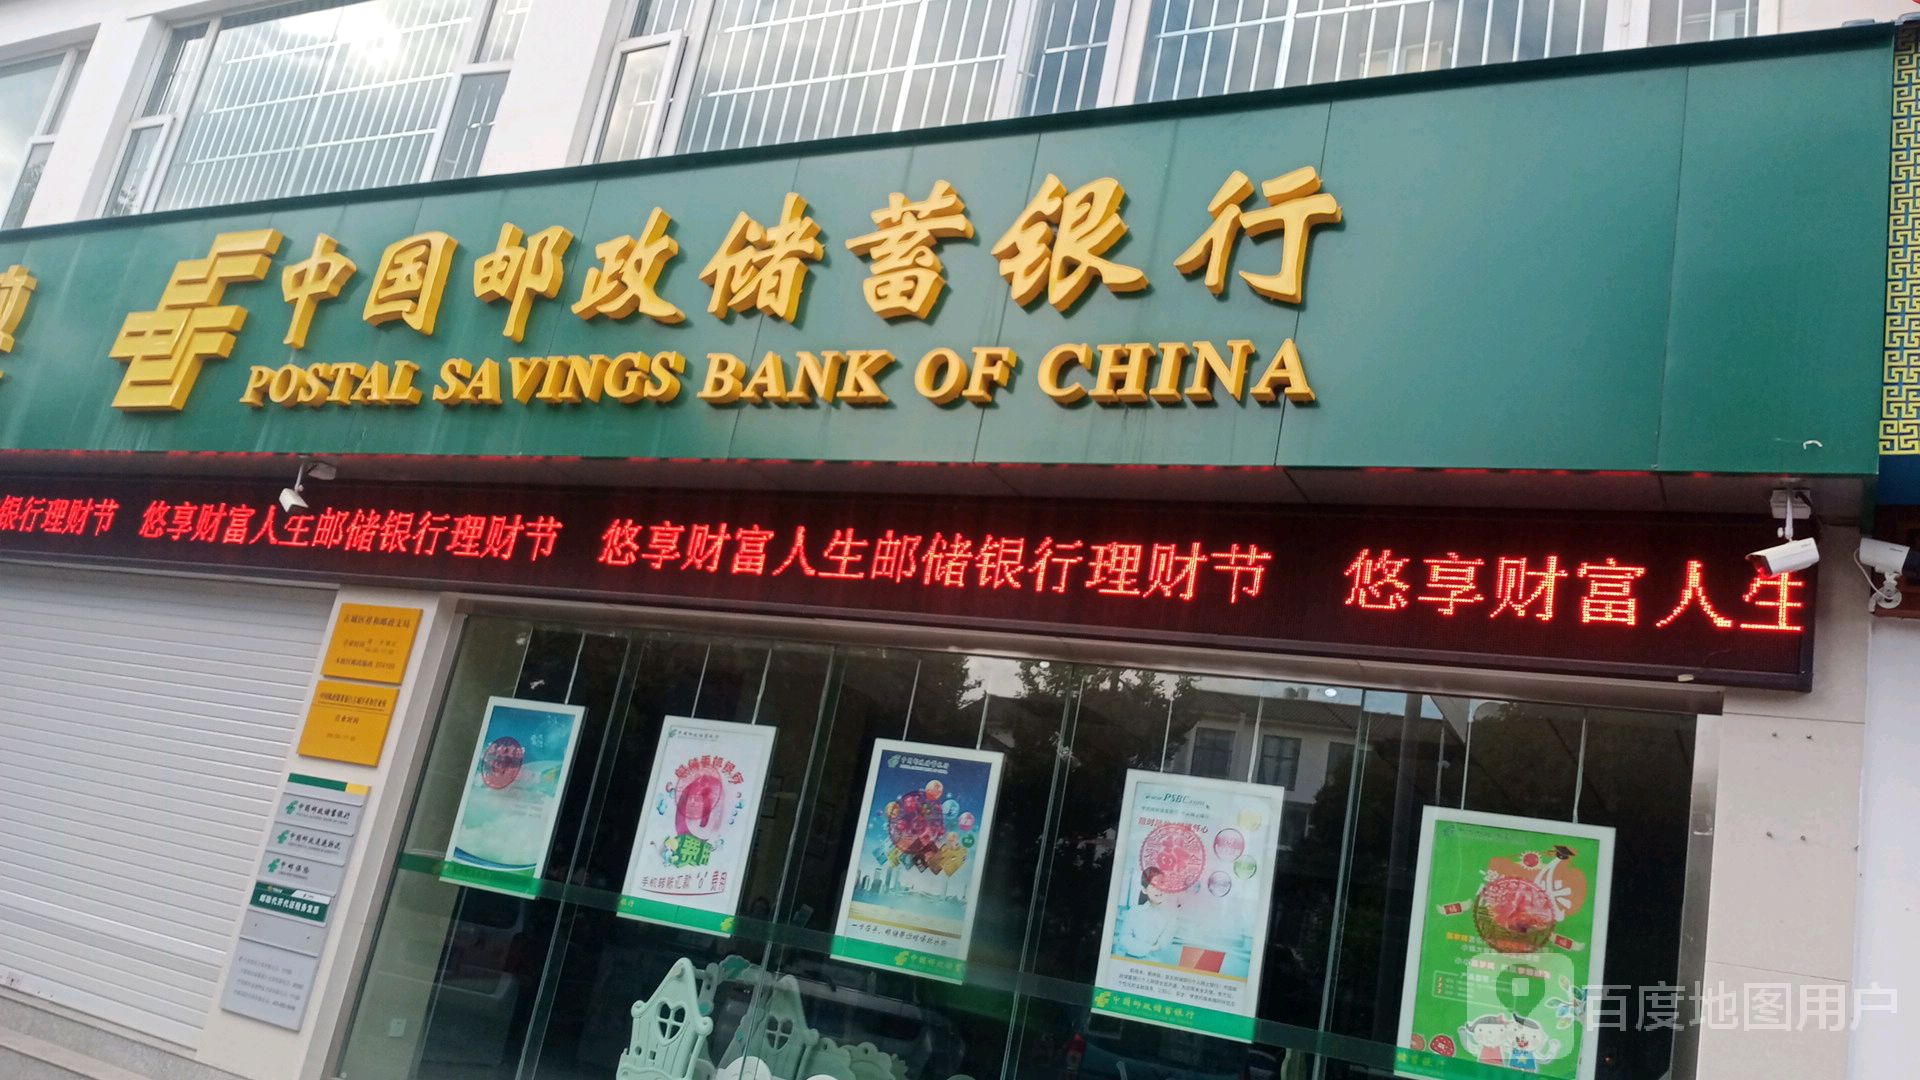 中国邮电储蓄银行(丽江市四方街营业所)